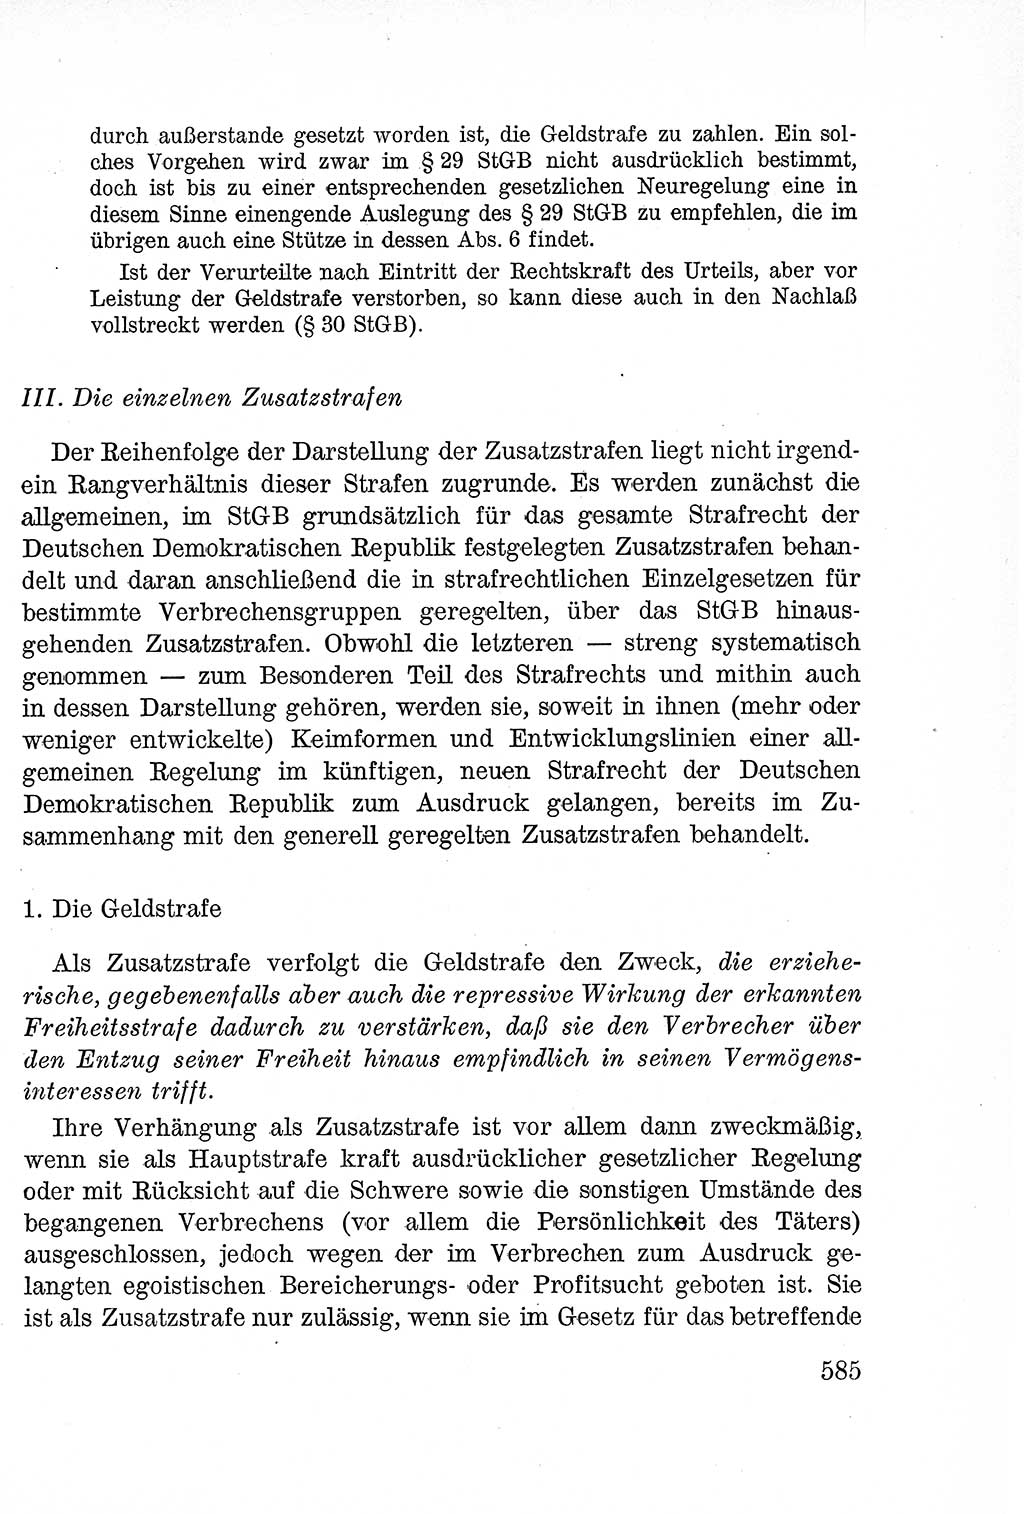 Lehrbuch des Strafrechts der Deutschen Demokratischen Republik (DDR), Allgemeiner Teil 1957, Seite 585 (Lb. Strafr. DDR AT 1957, S. 585)